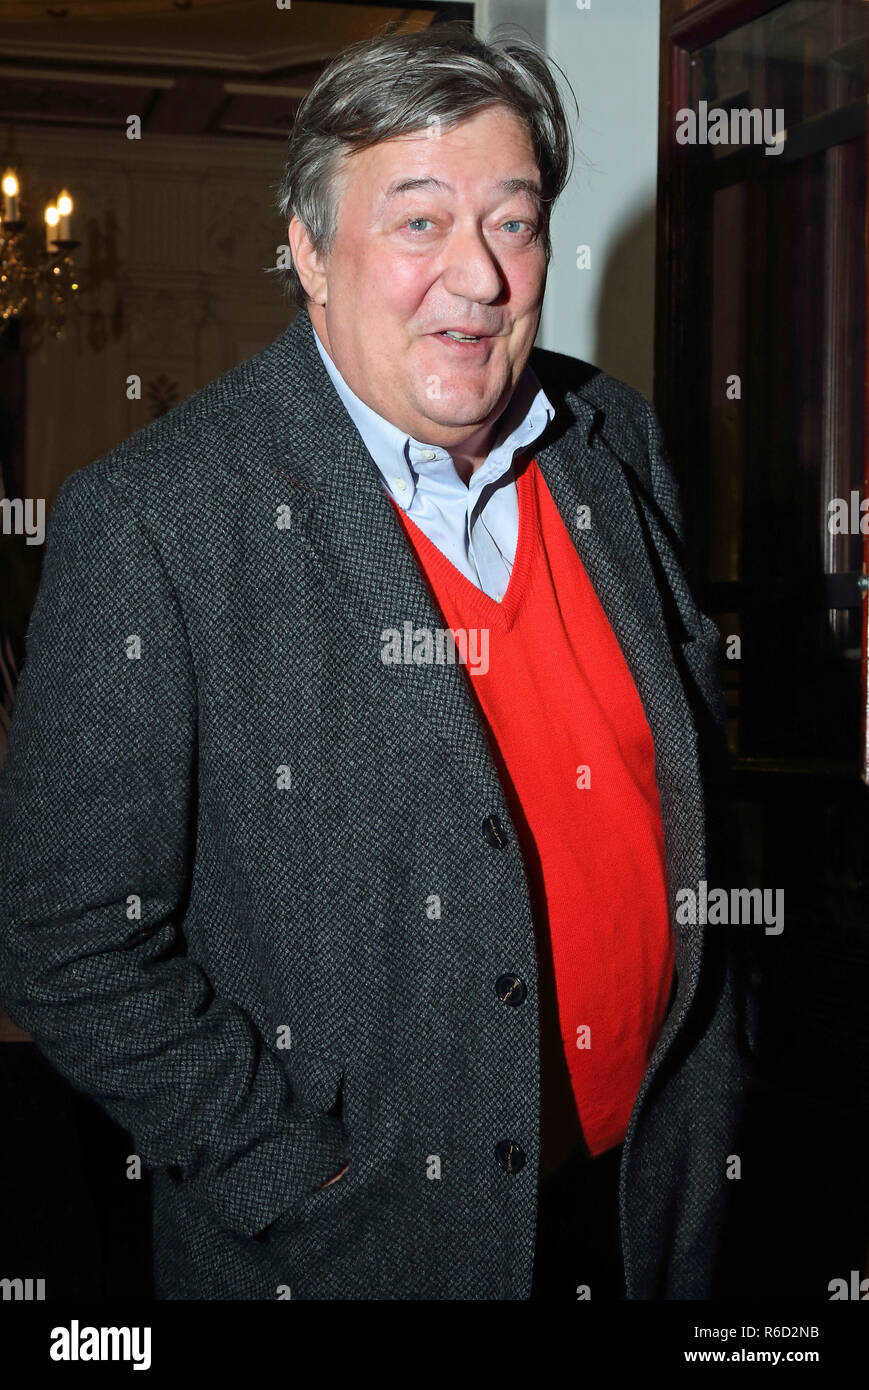 Londra, Regno Unito. 4° dic, 2018. Stephen Fry al vero West premere notte al Vaudeville Theatre. Credito: Keith Mayhew/SOPA Immagini/ZUMA filo/Alamy Live News Foto Stock